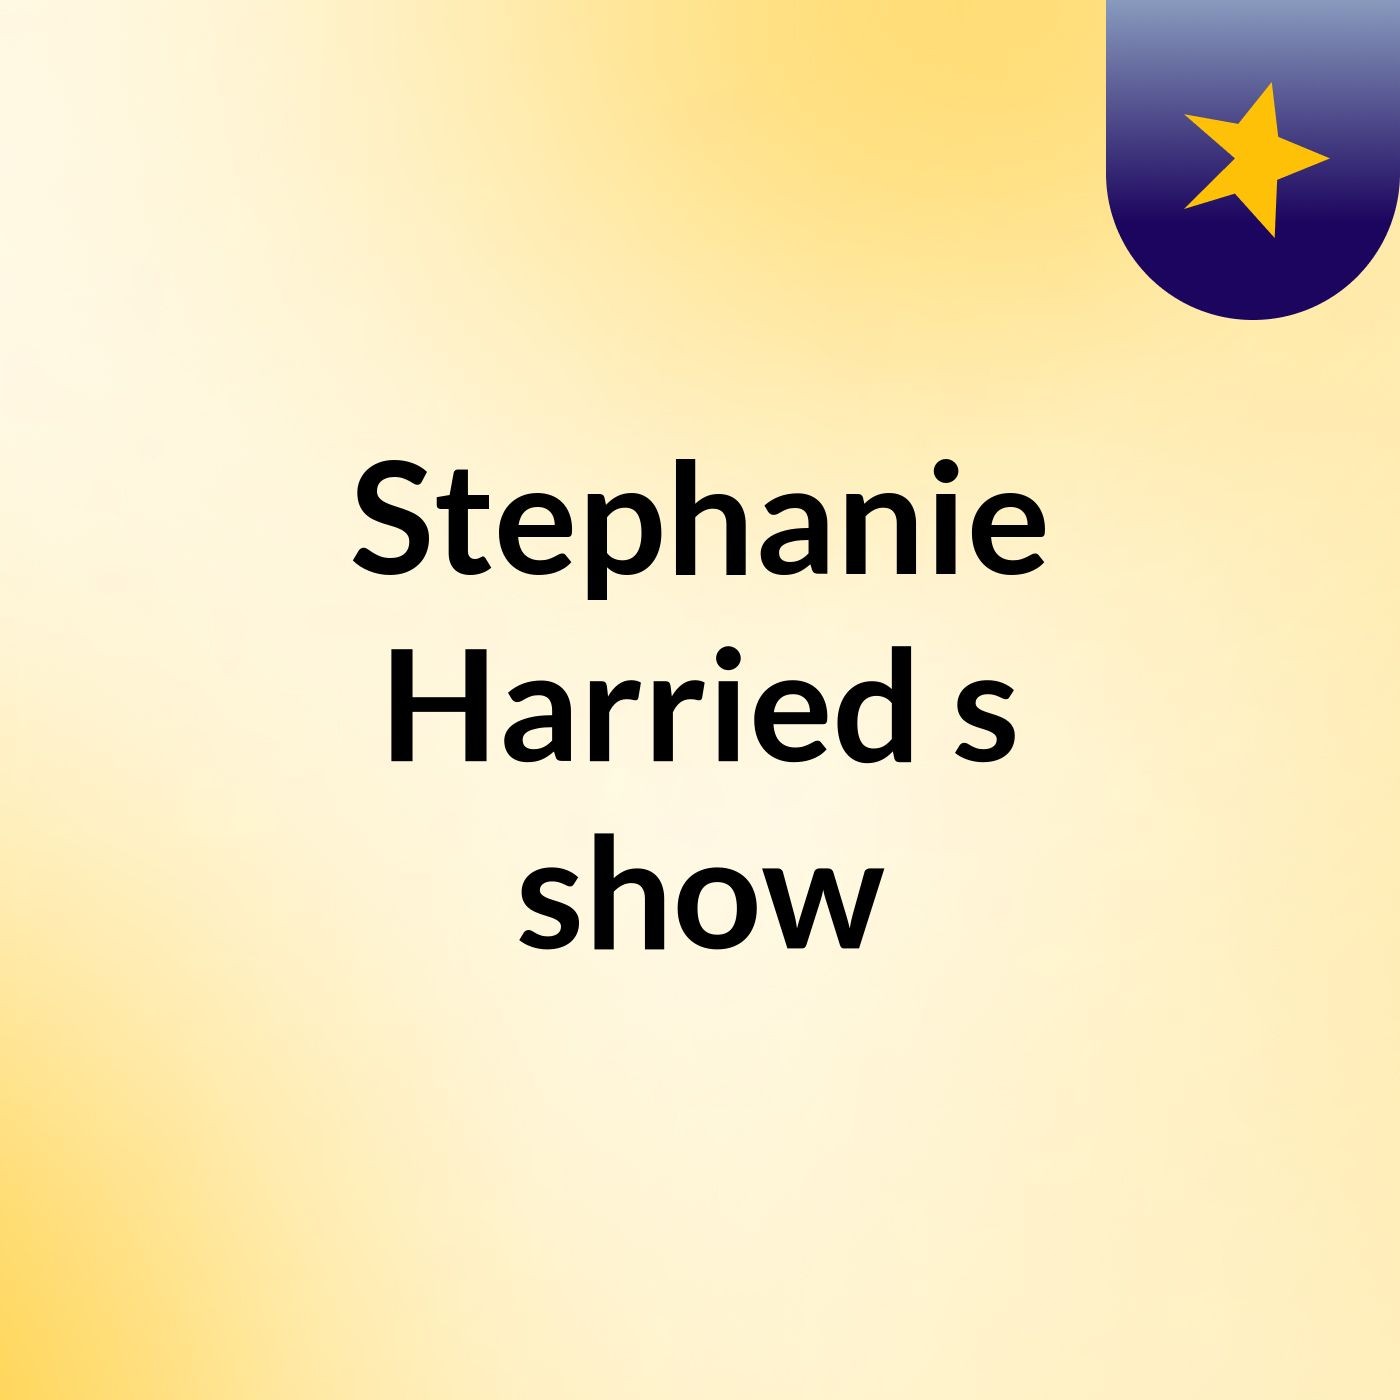 Stephanie Harried's show